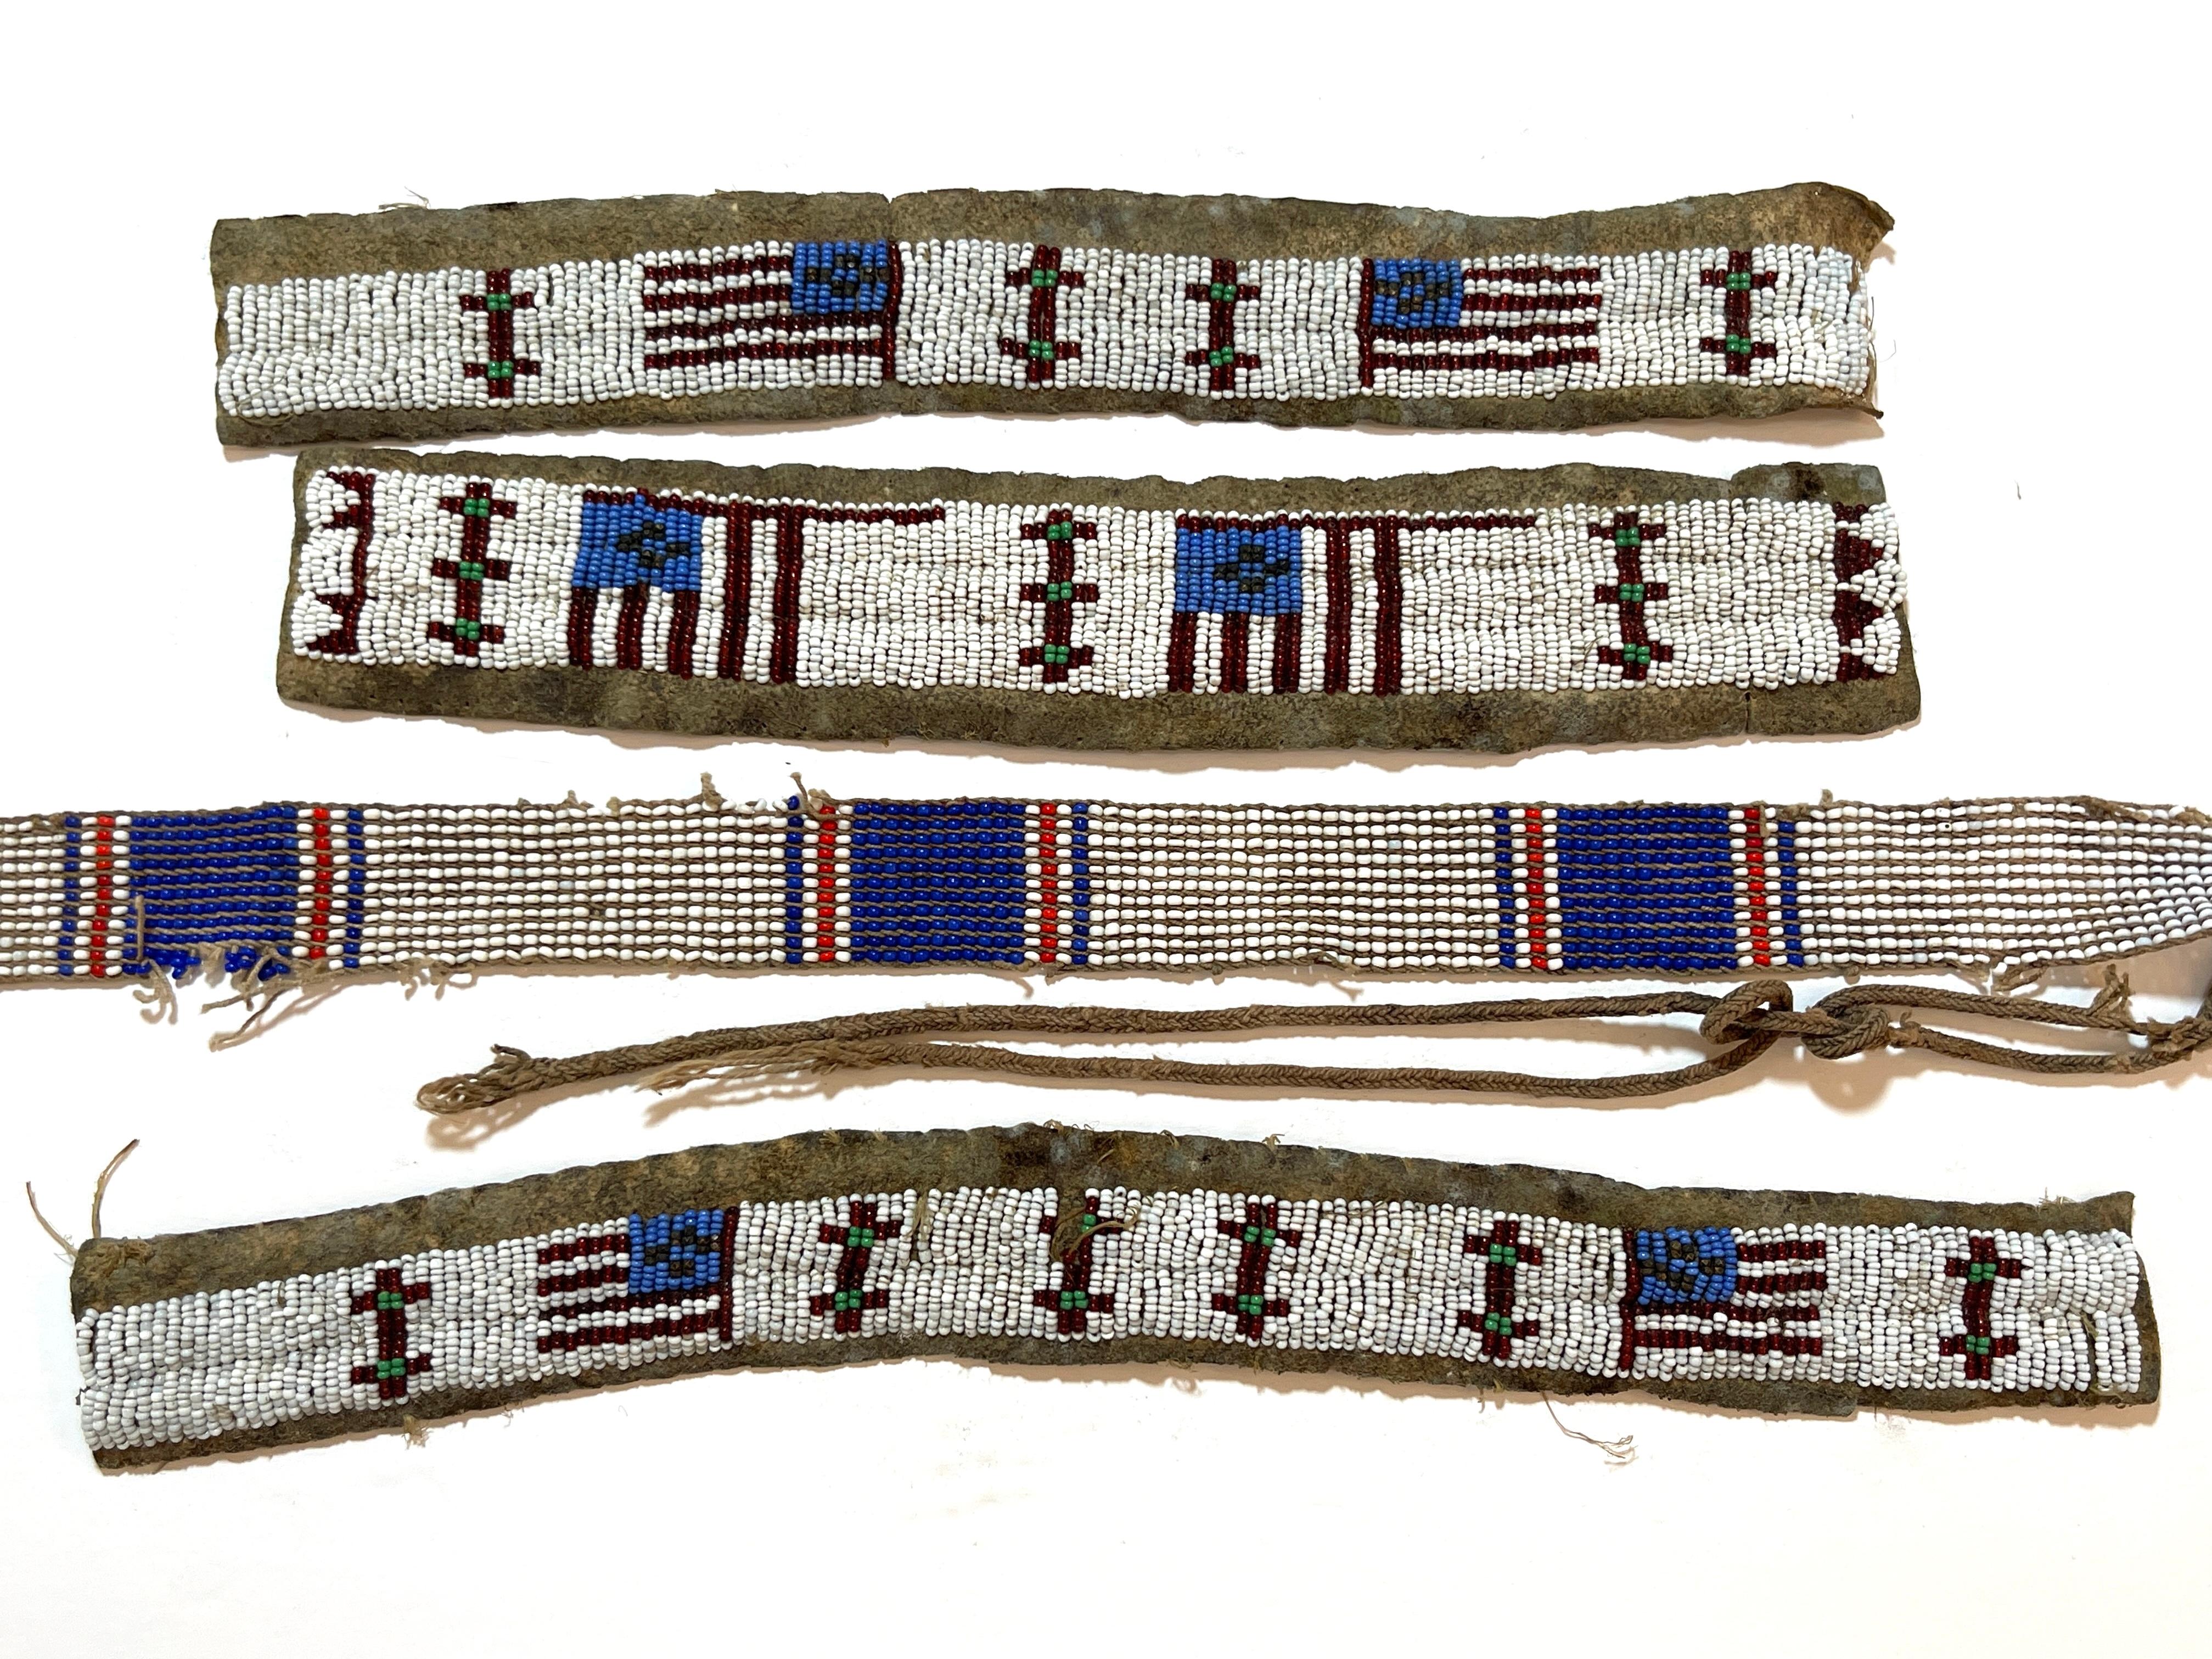 Ensemble de 4 bandes perlées de cérémonie à motif de drapeau américain de la tribu des Plaines 
États-Unis, vers les années 1900
Une rare collection de quatre bandes de perles de cérémonie à motif de drapeau américain de la tribu des Plaines, datant